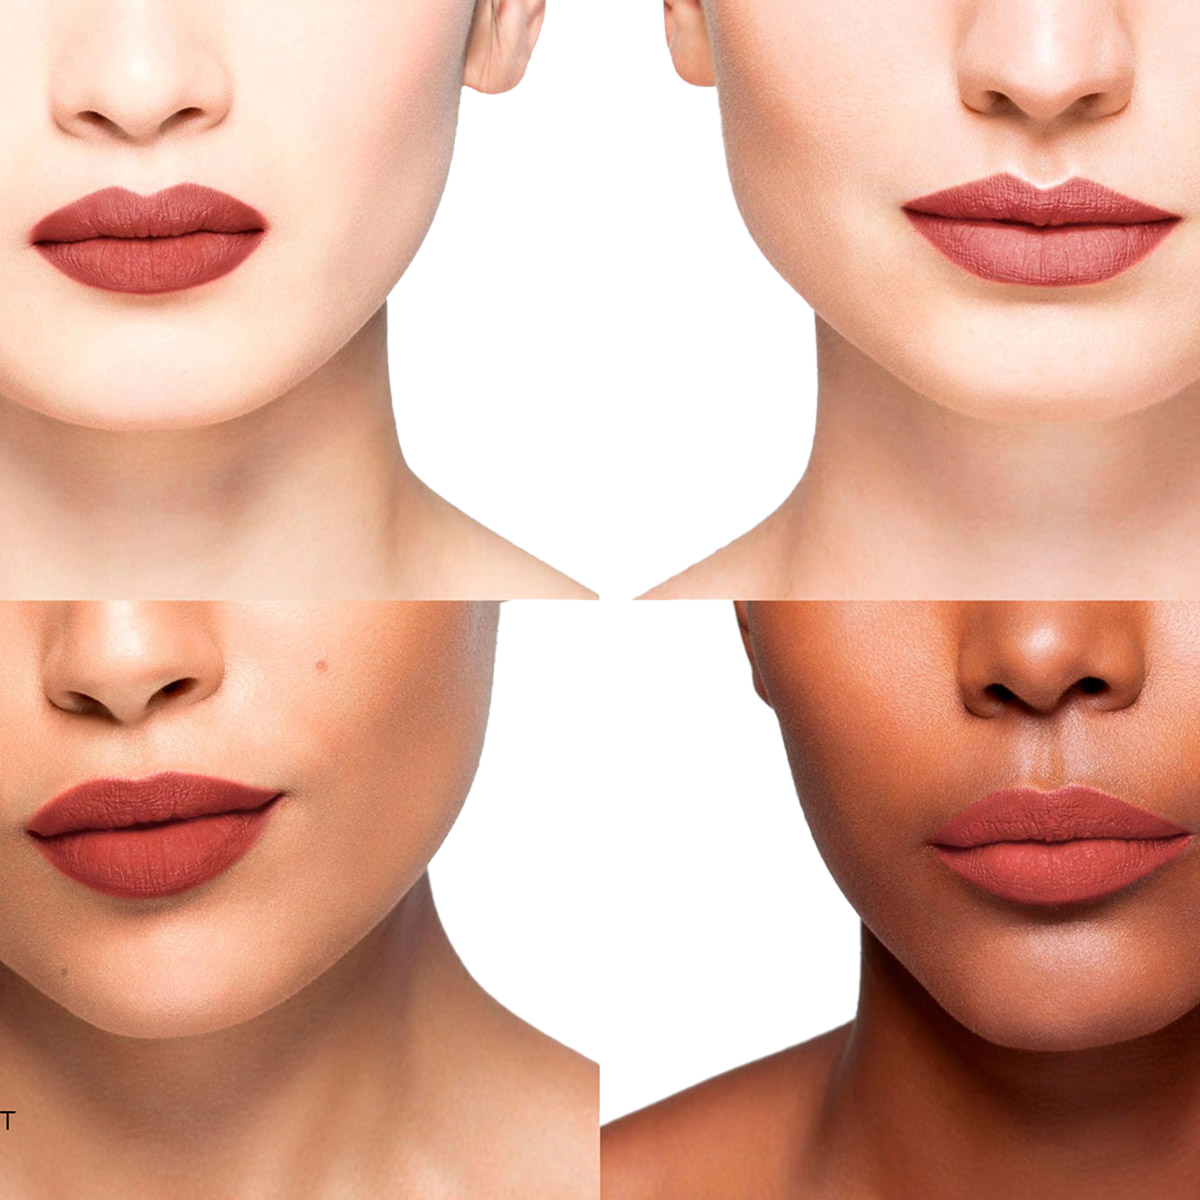 la bouche rouge, Paris - Matte Lipstick Refill